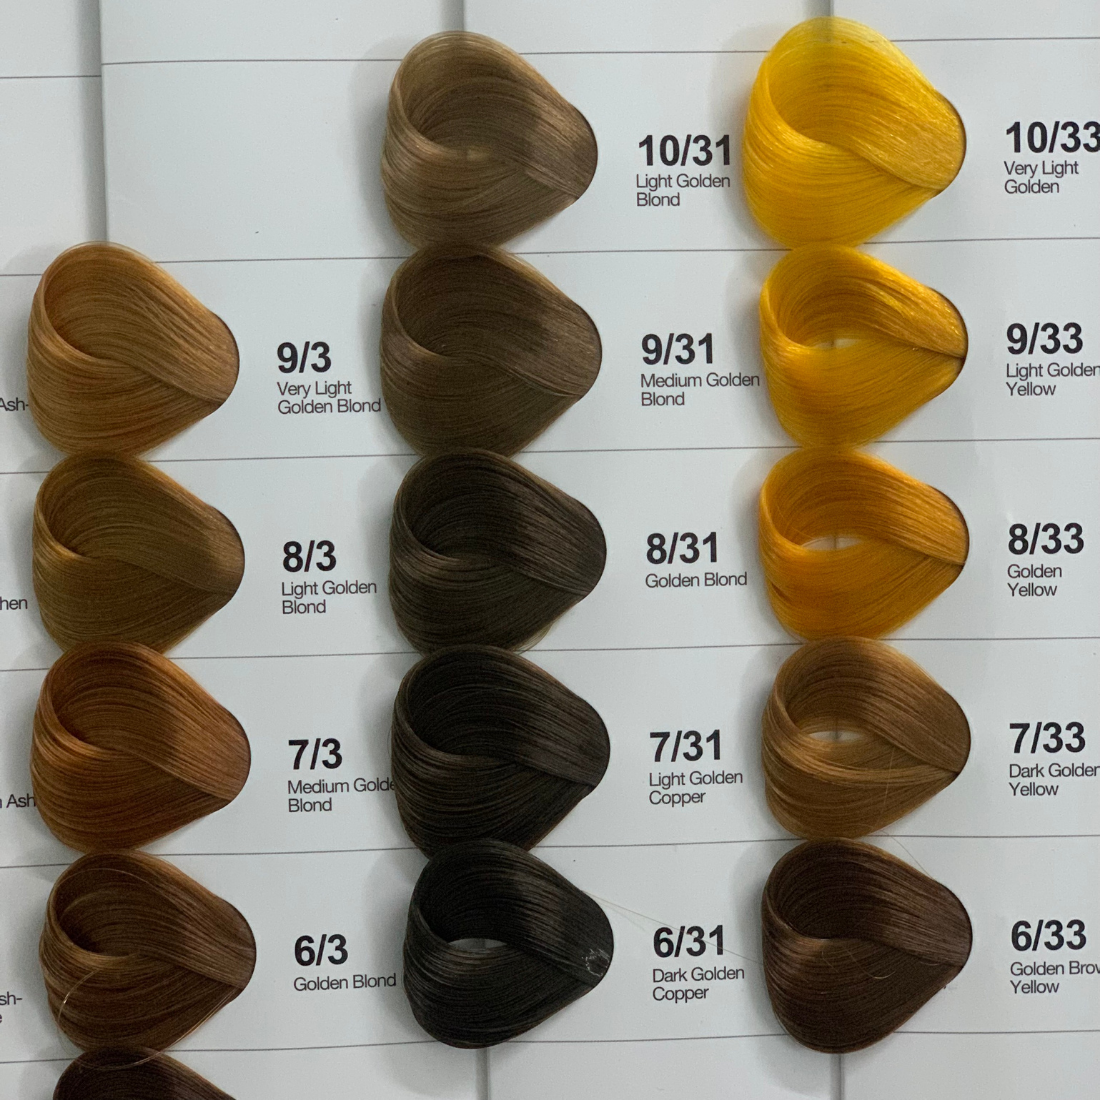 Tận hưởng cảm giác tuyệt vời khi sở hữu mái tóc với màu sắc tuyệt đẹp từ sản phẩm thuốc nhuộm tóc Hàn Quốc full mã màu (không kèm oxy) sỉ lẻ dành. Sản phẩm chất lượng cao, dành cho mọi loại tóc, với hiệu quả nhuộm tối ưu. Hãy cùng xem hình ảnh để khám phá sức mạnh của sản phẩm!